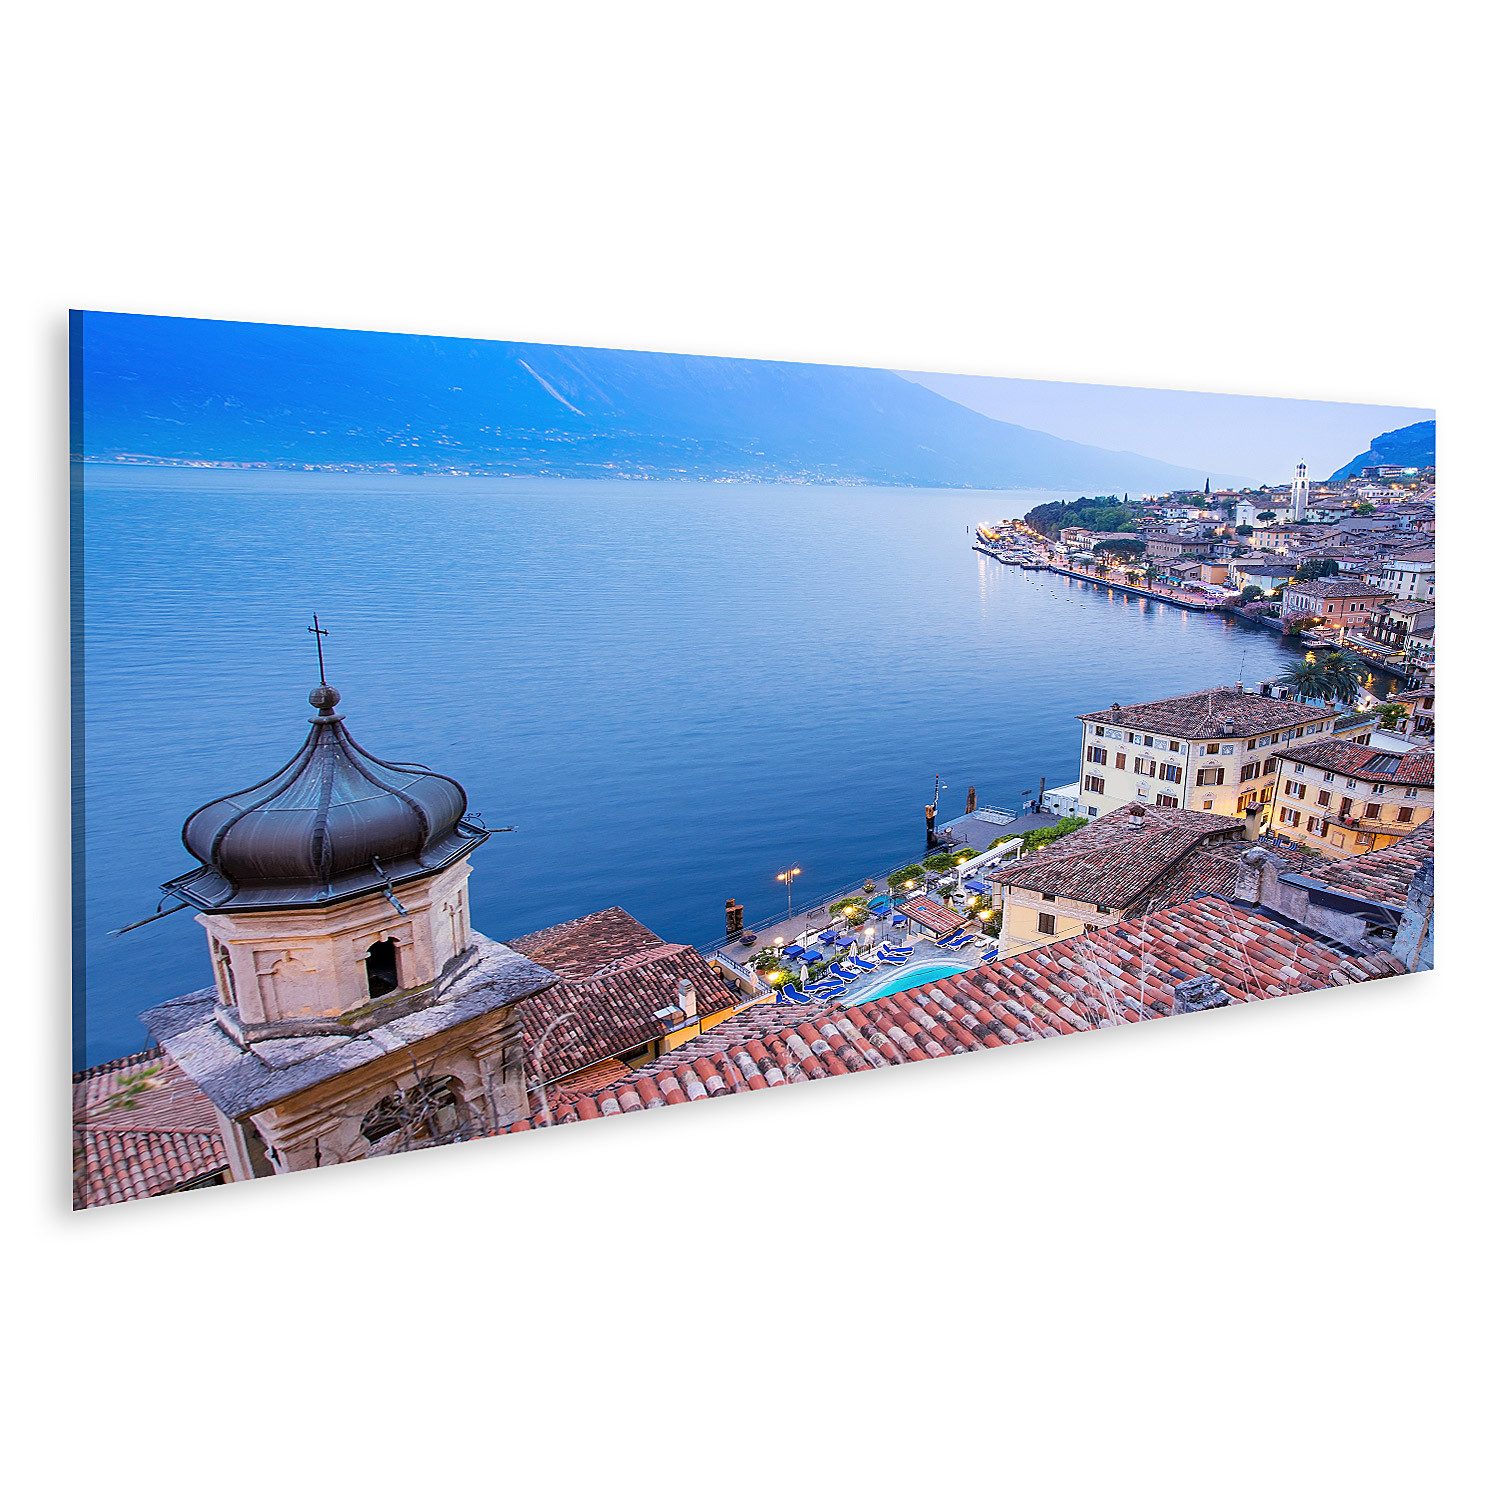 islandburner Leinwandbild Limone Sul Garda Gardasee Italien Panoramablick Blaue Stunde Bilder